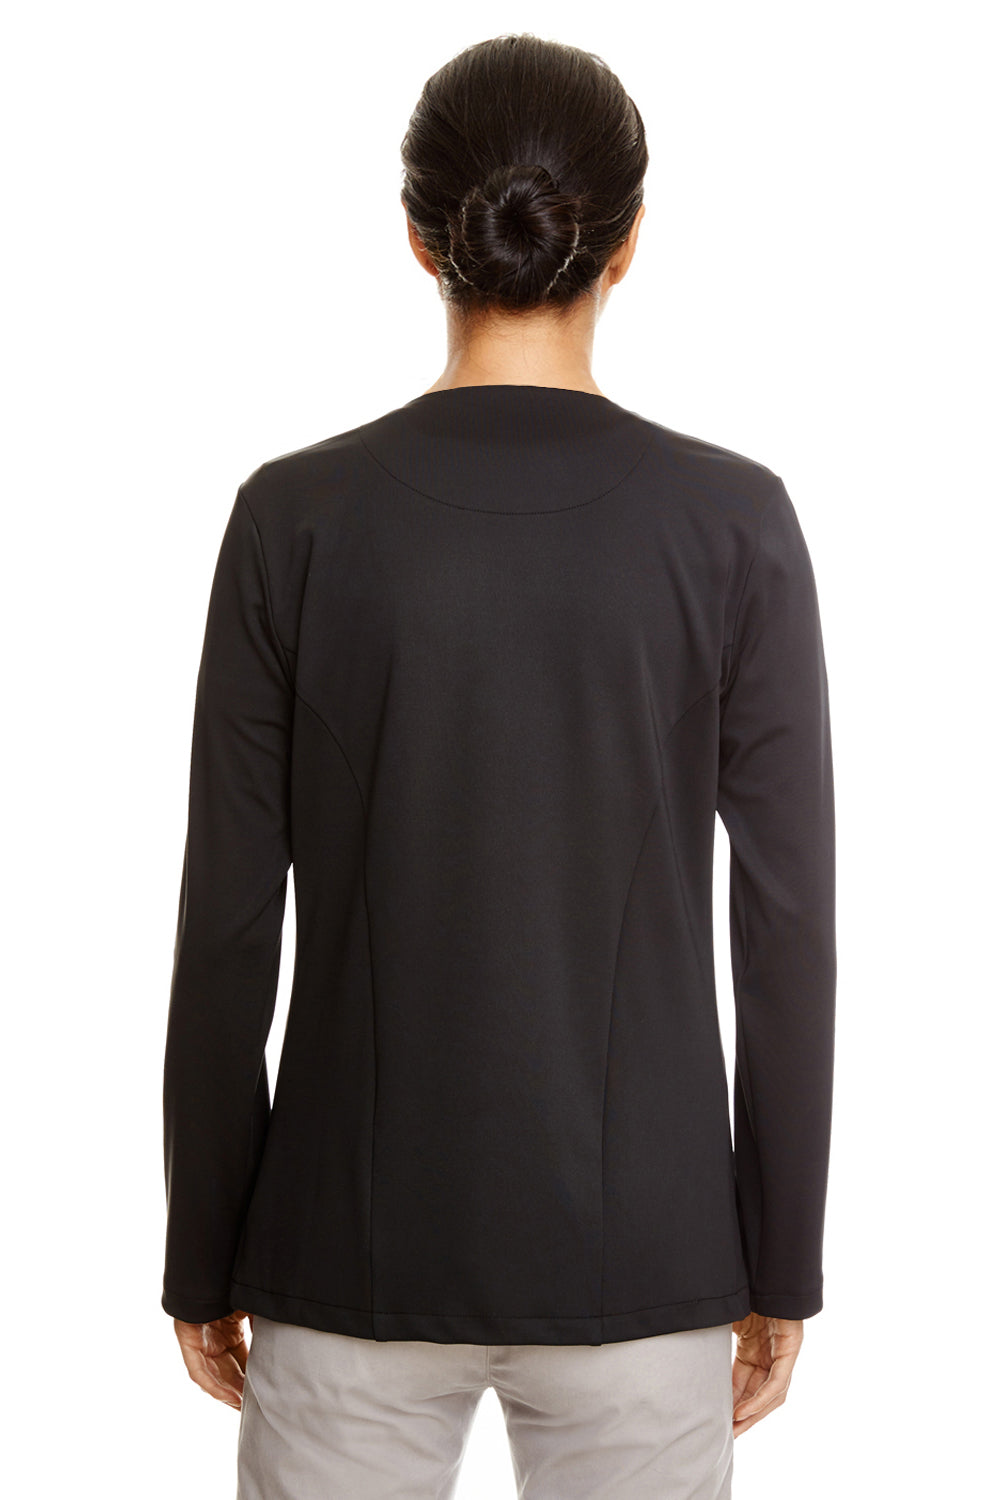 Devon & Jones DP465W Womens Perfect Fit Moisture Wicking Open Front Sweatshirt Black Back